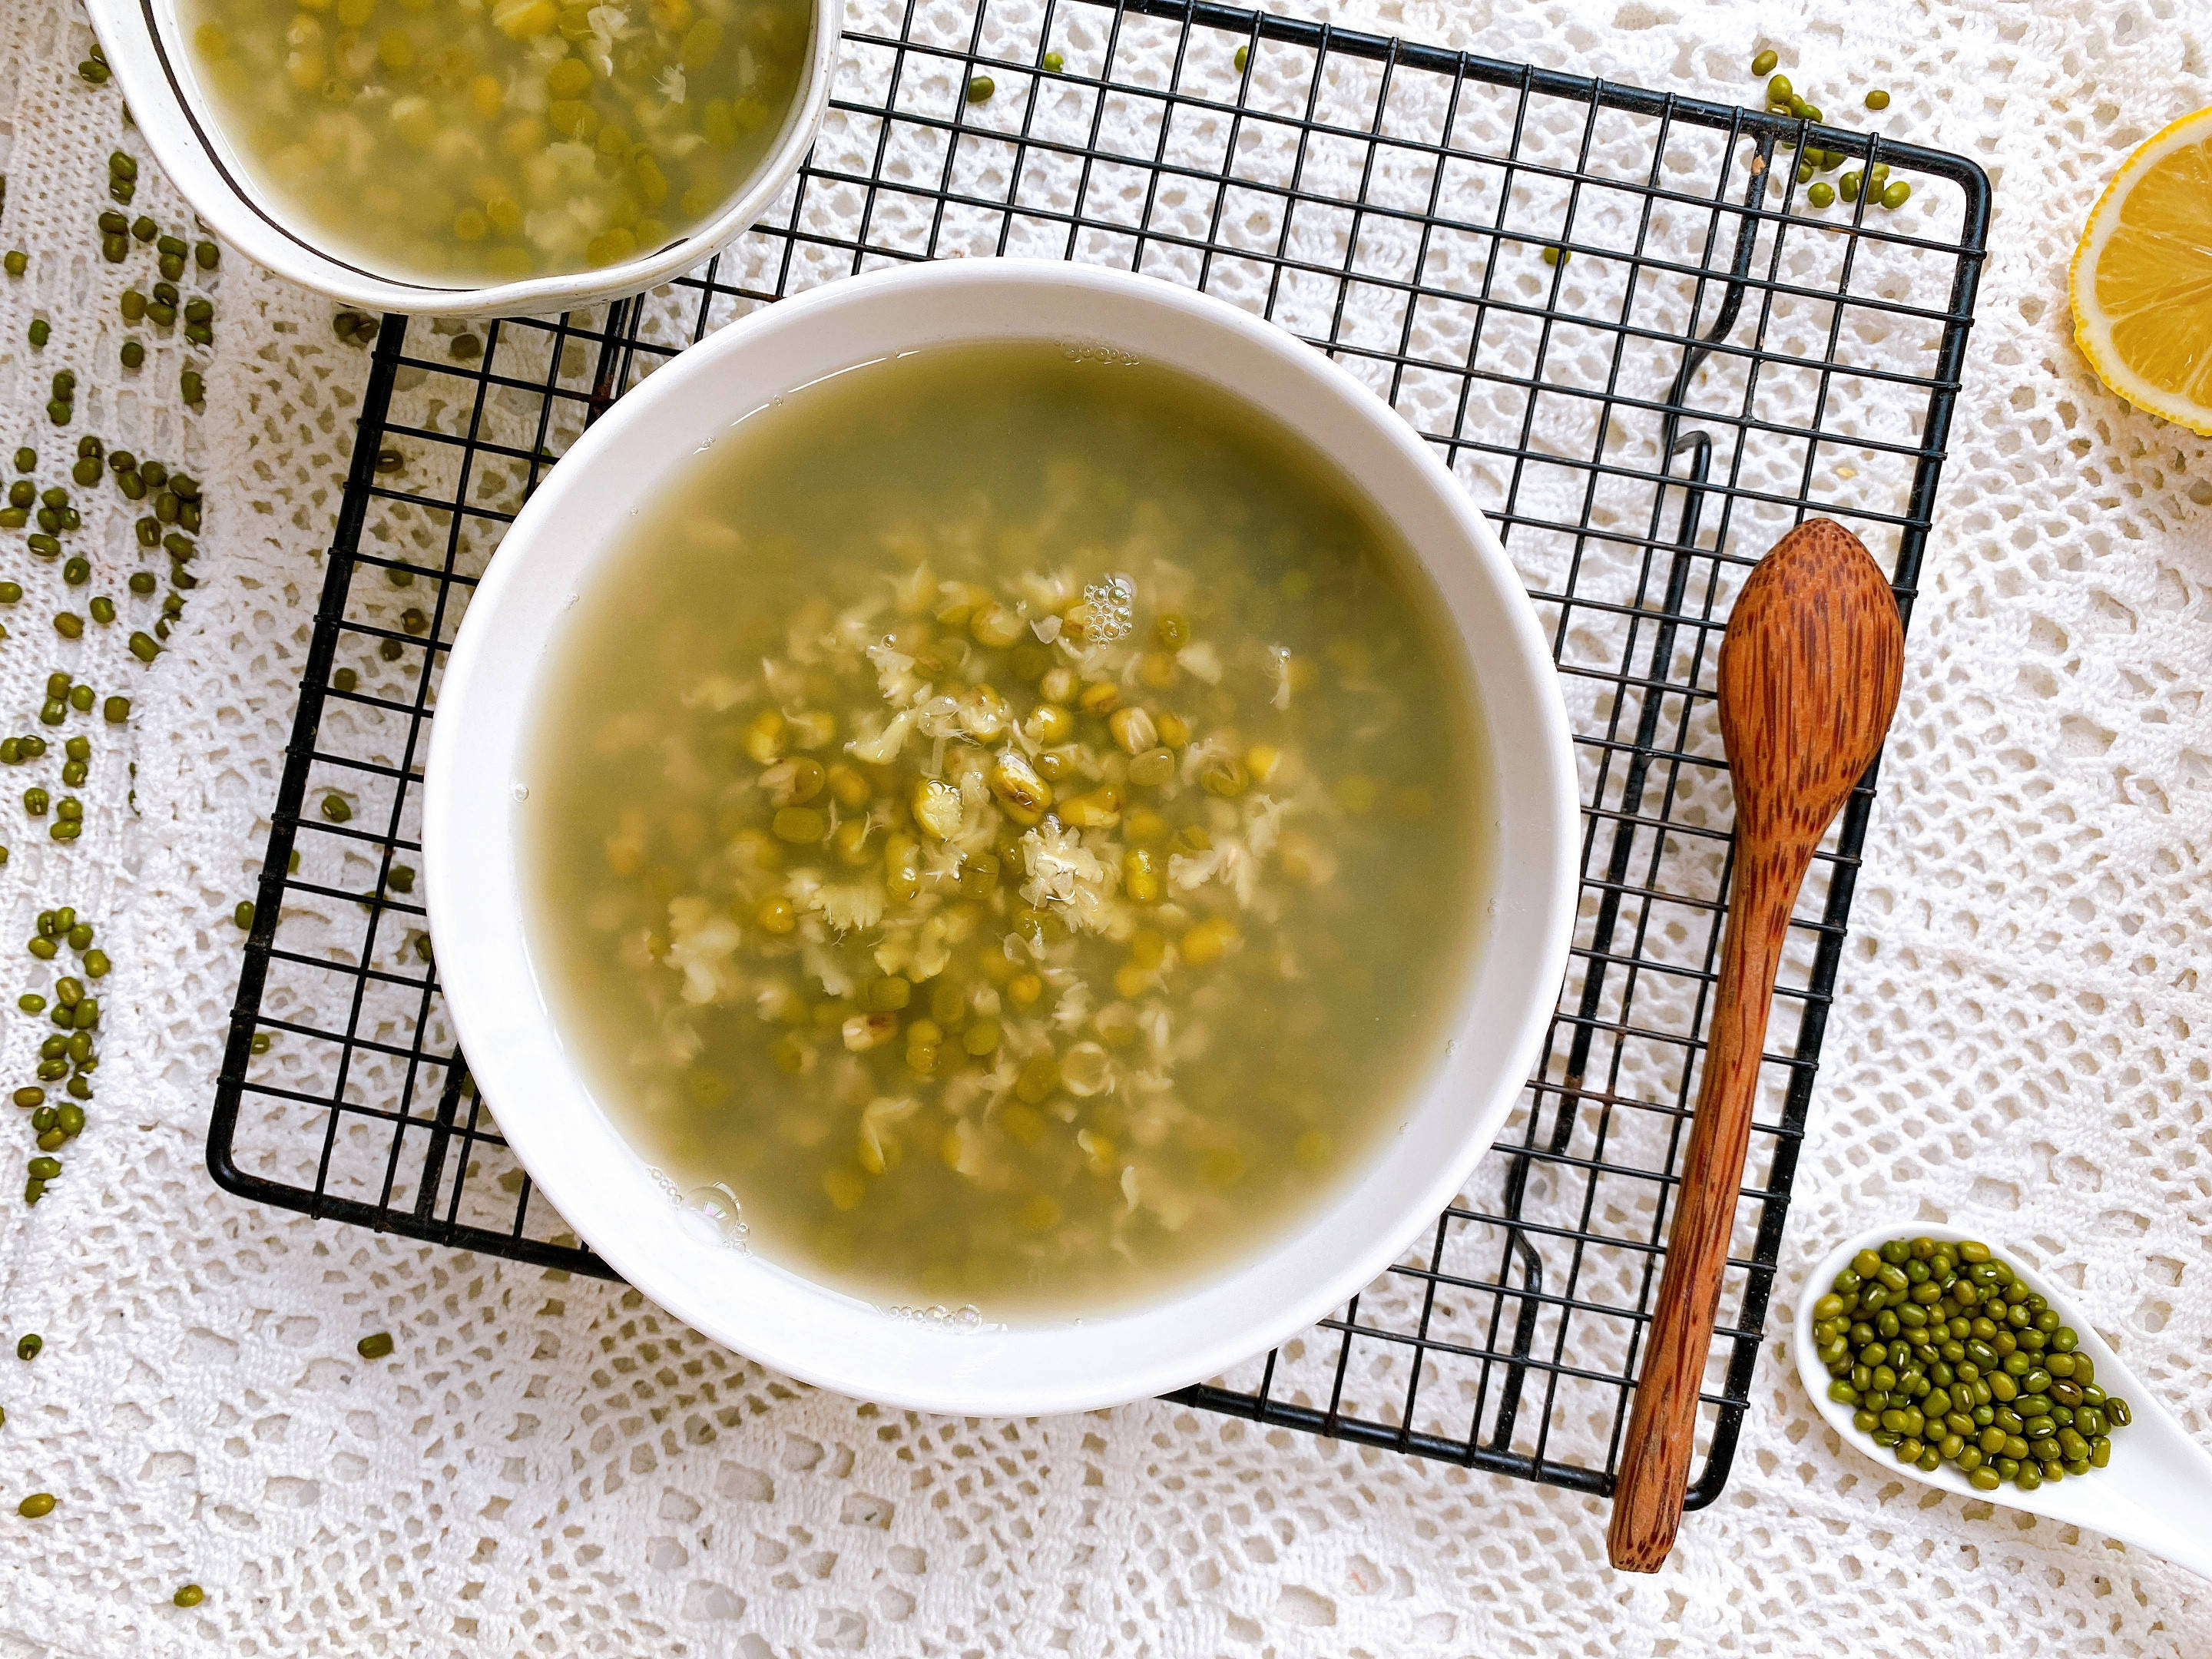 绿豆汤的做法总结:1,绿豆汤中还可以加入适量的百合或者莲子,味道也是